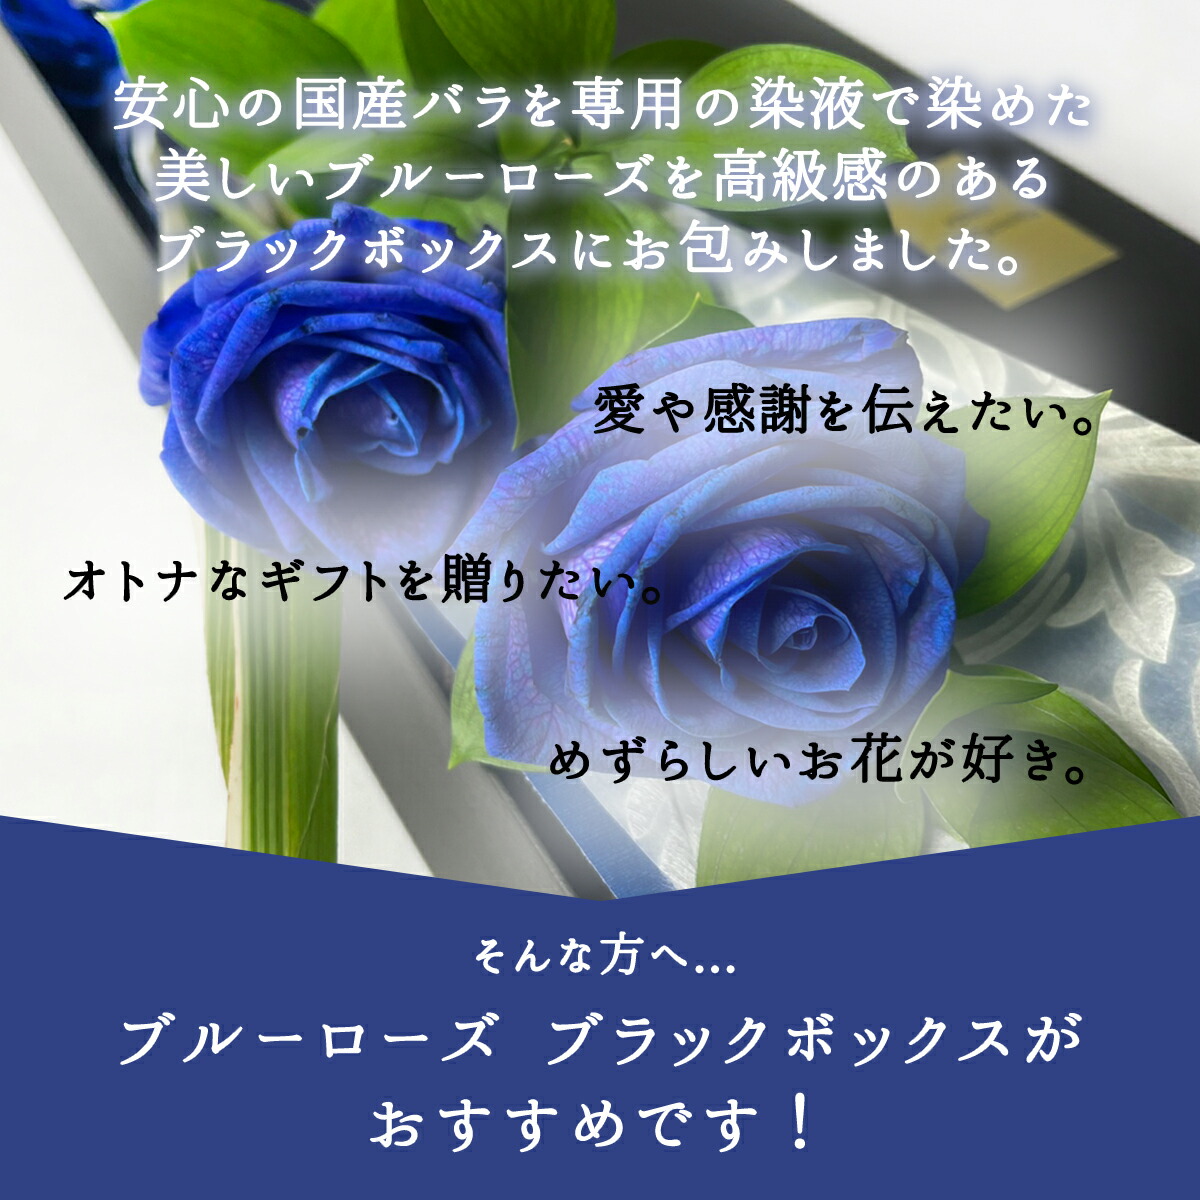 株式会社カプコン Blue rose様専用です | artfive.co.jp